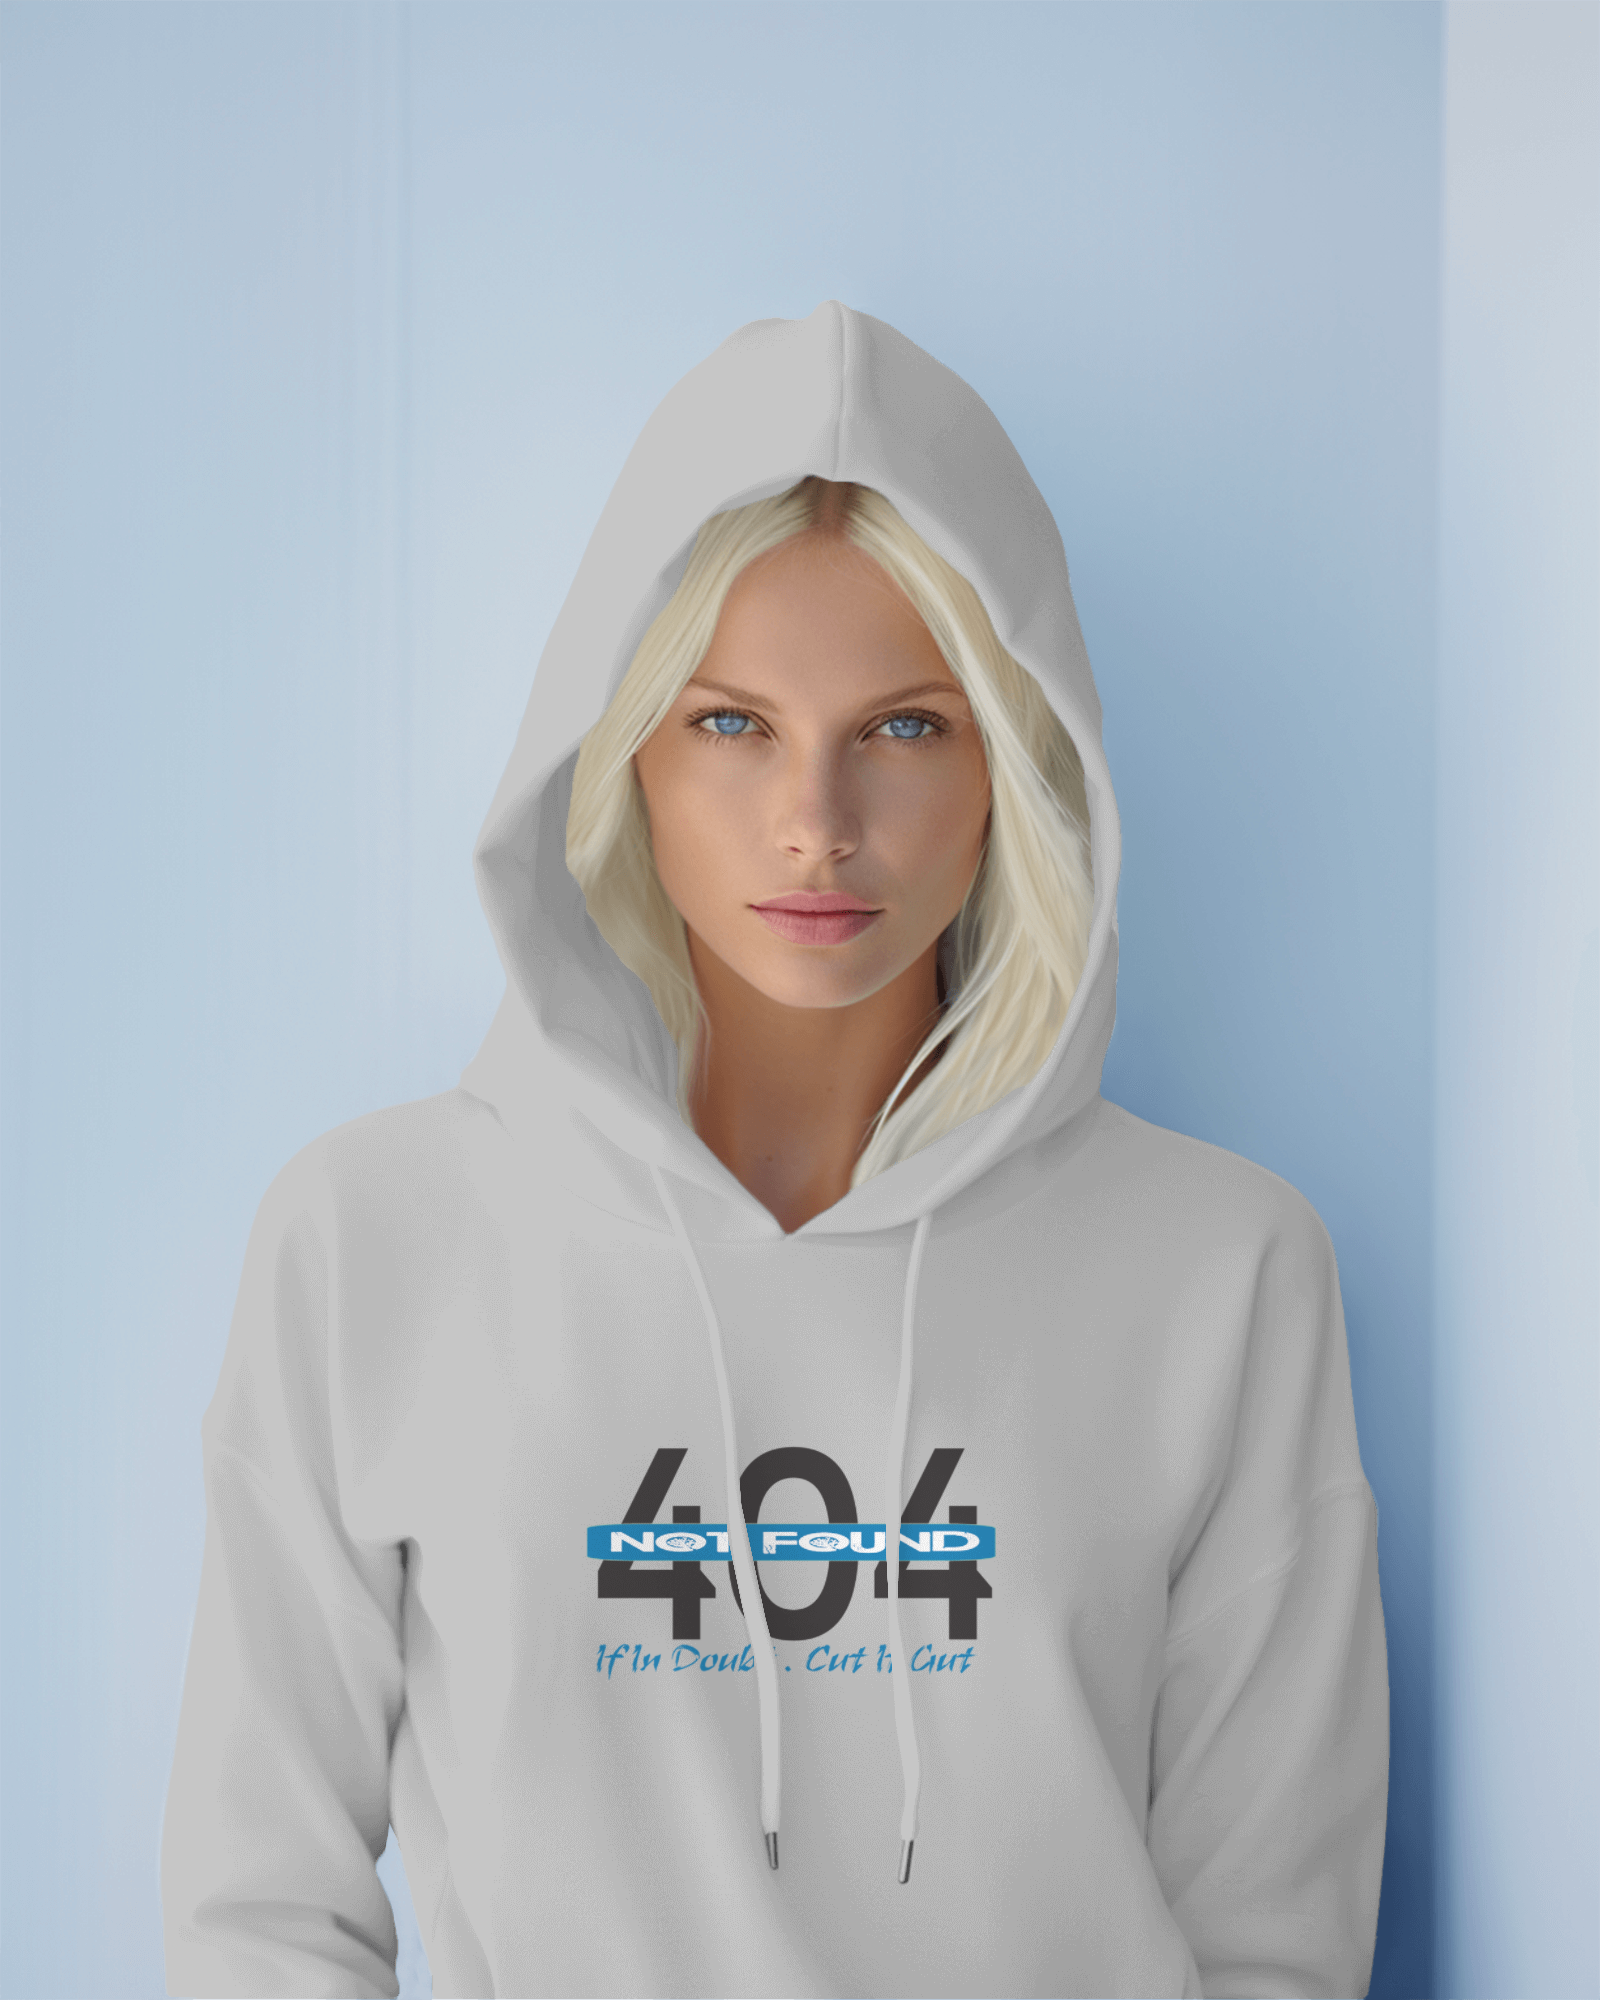 404 trending design hoodies for women